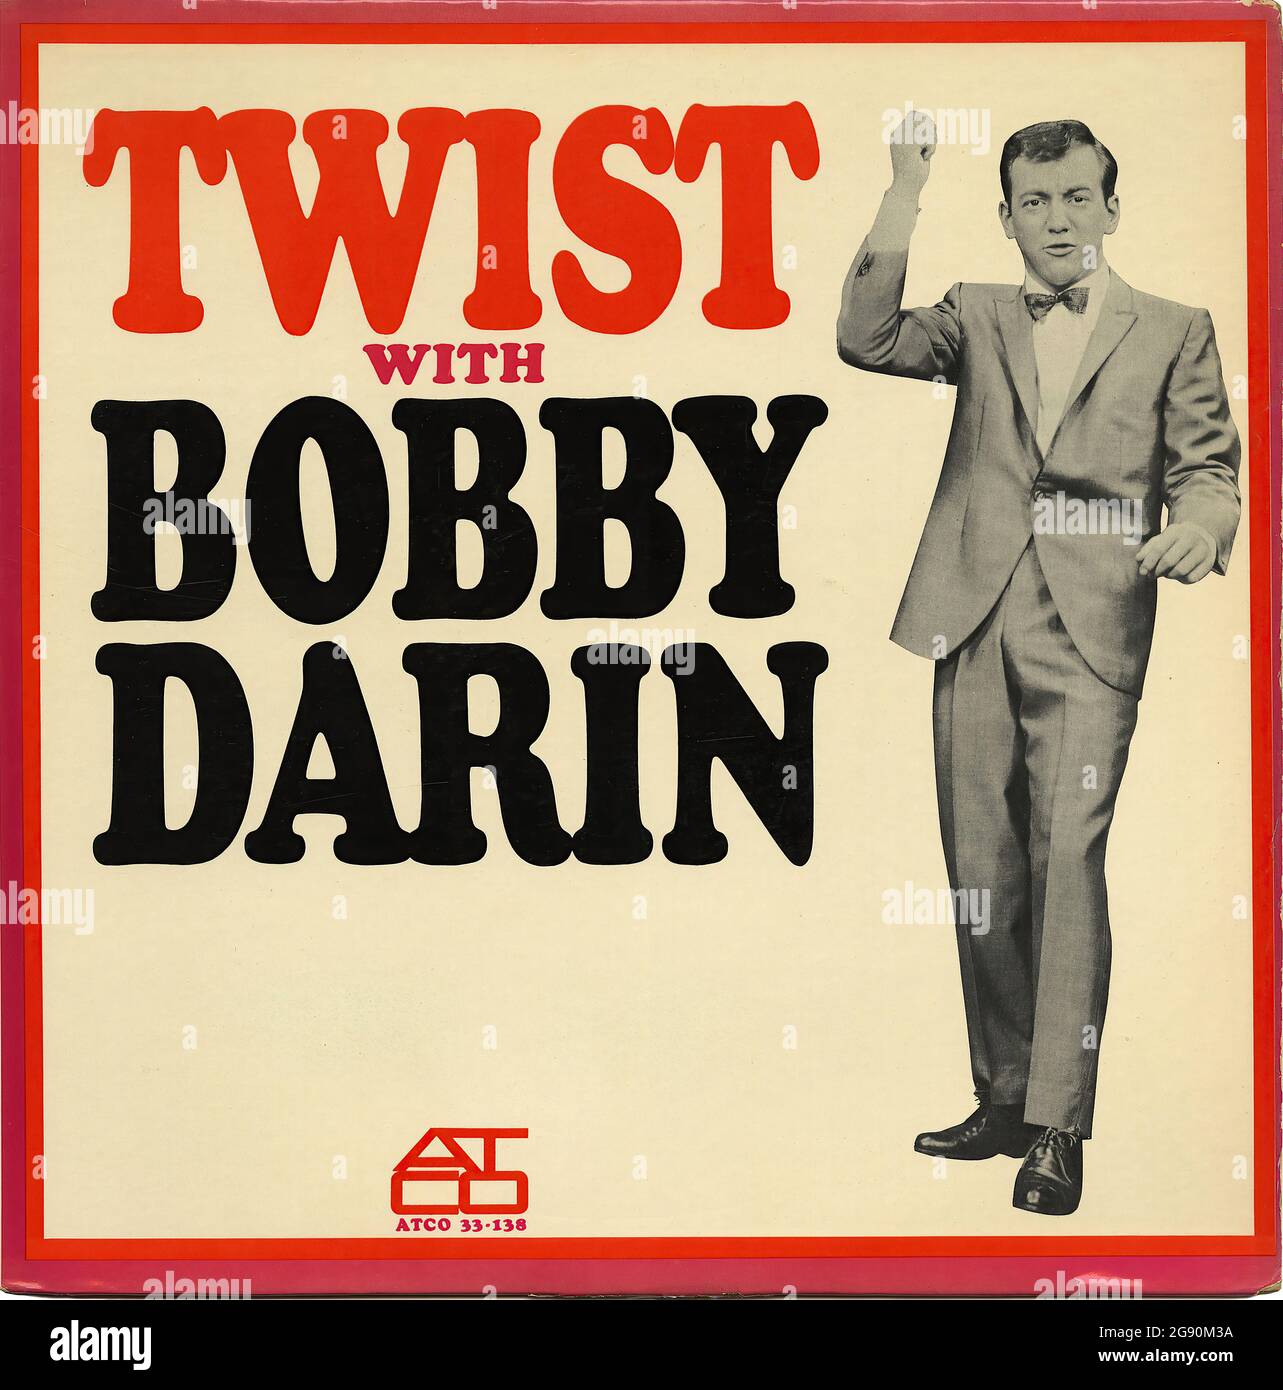 Twist avec Bobby Darin - couverture Vintage Vinyl Record Banque D'Images